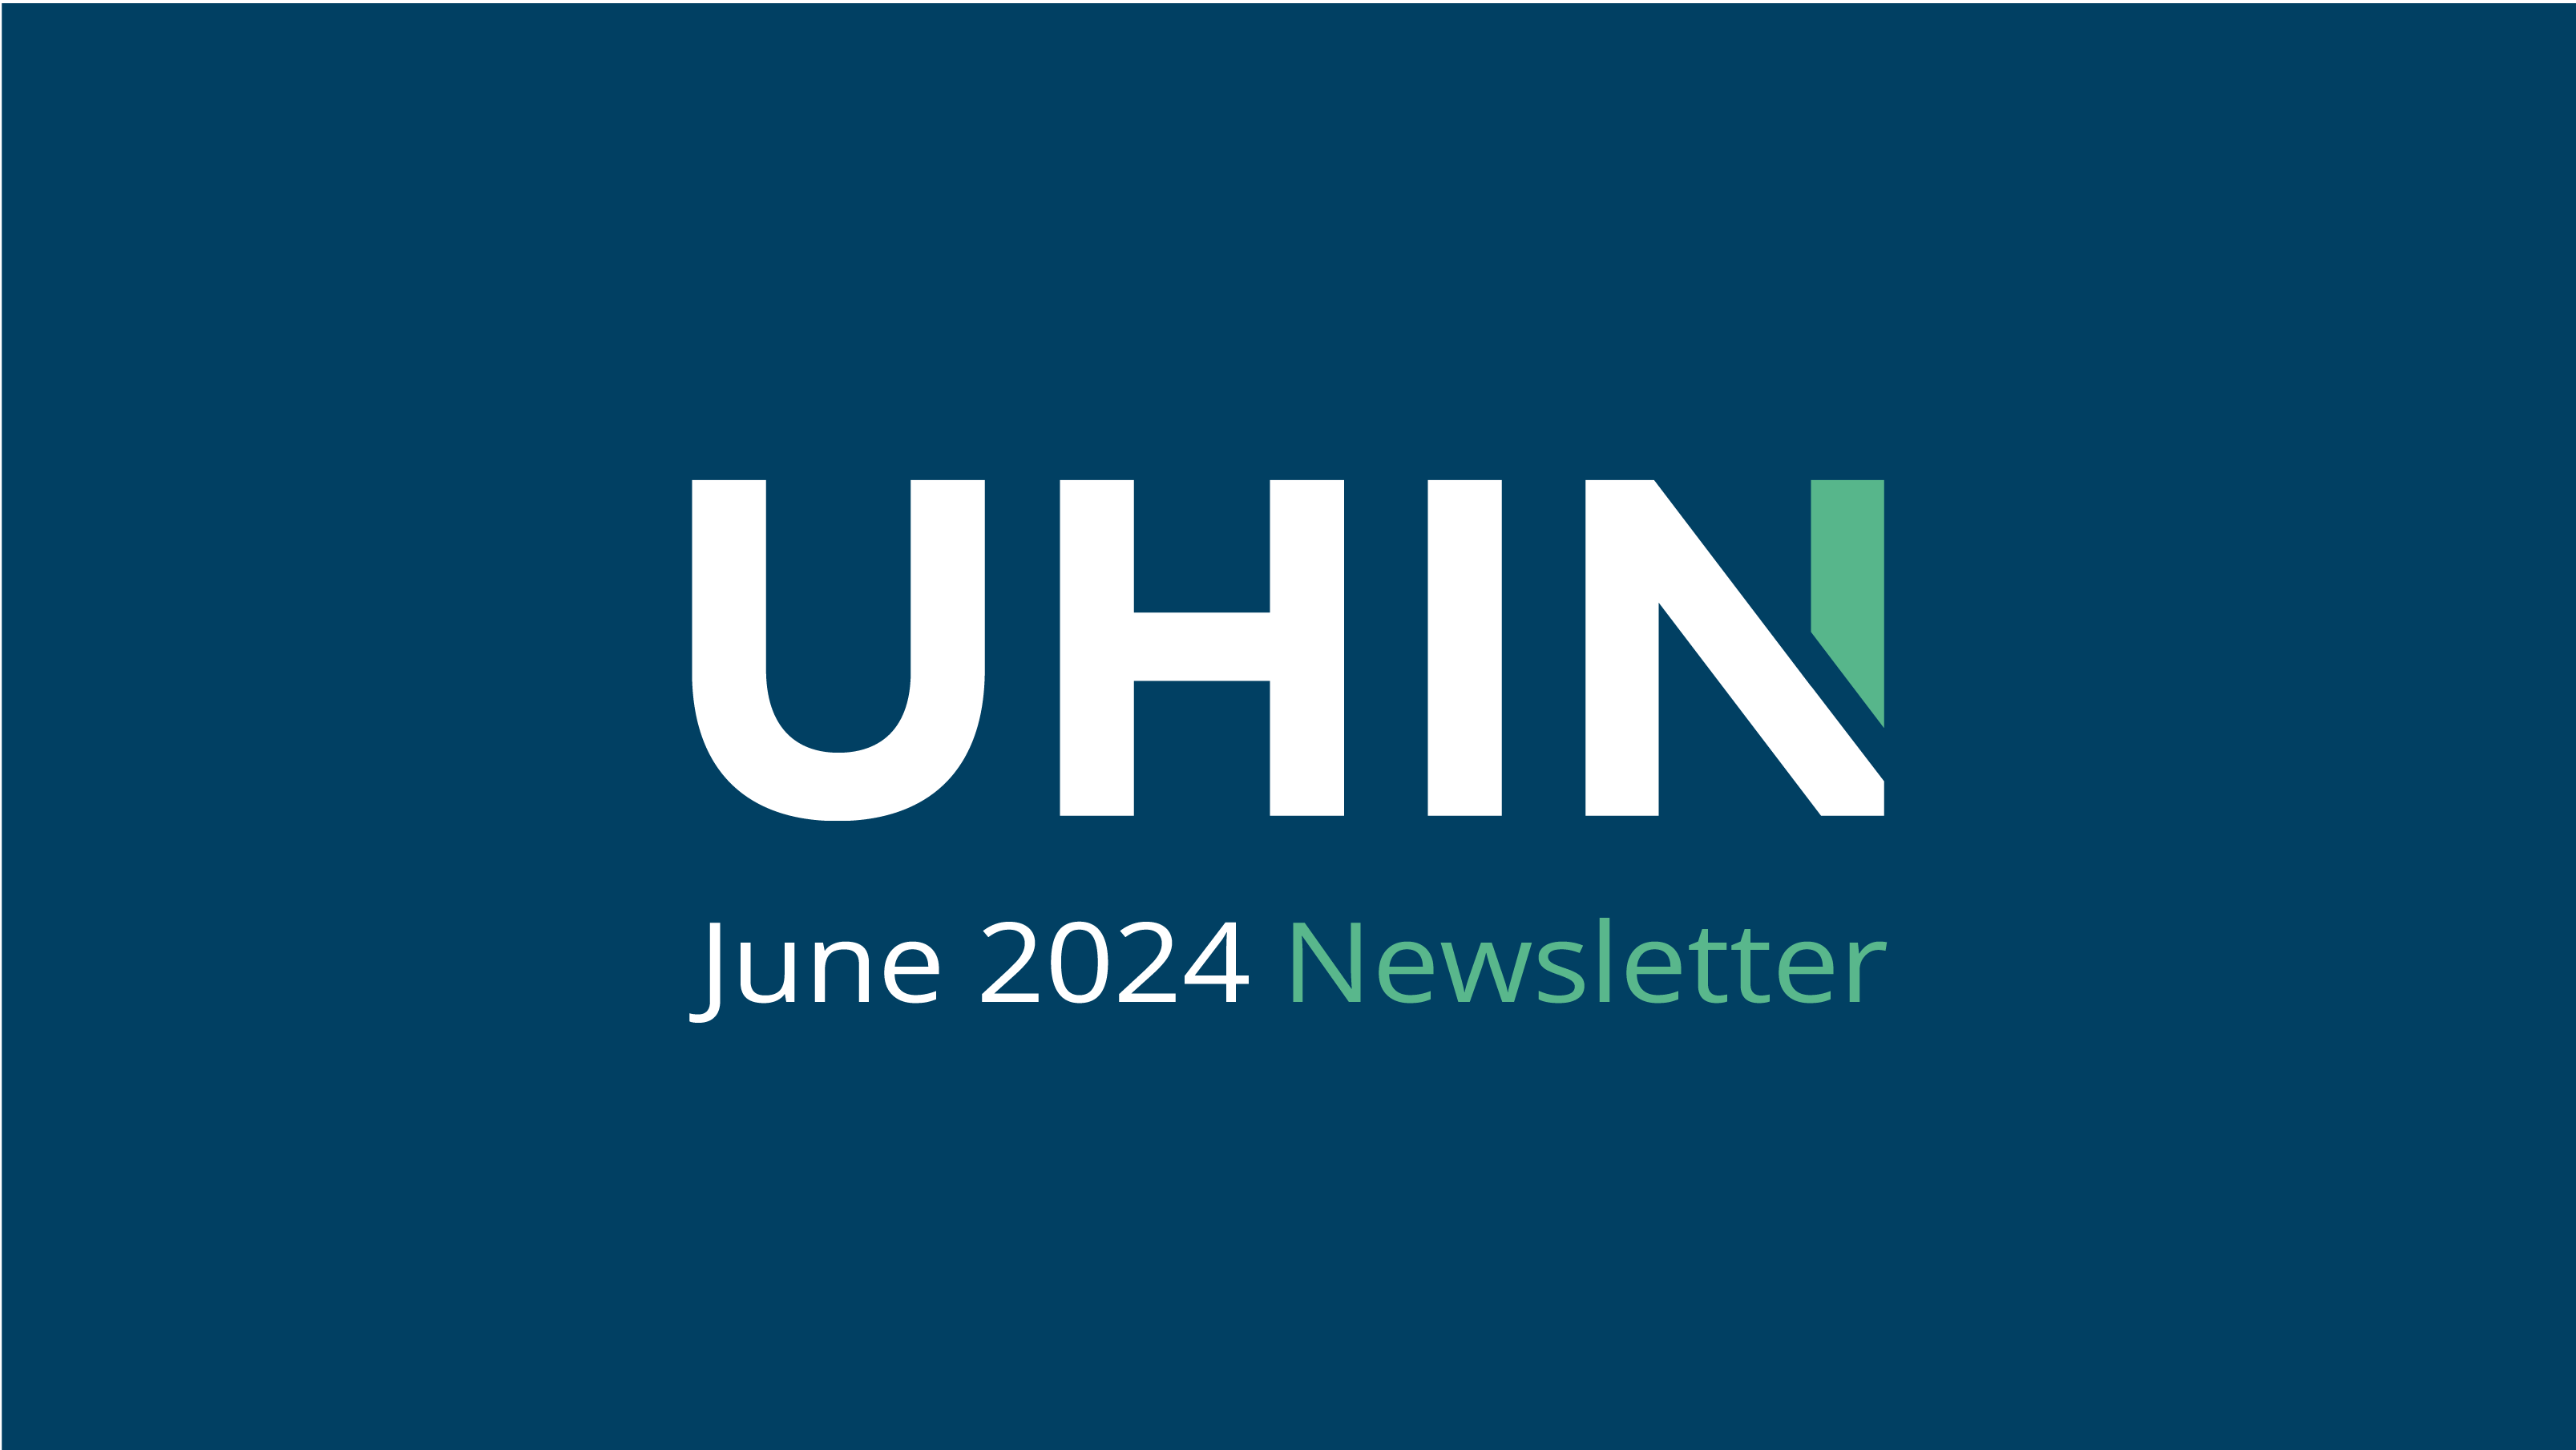 Newsletter: June 2024 Issue